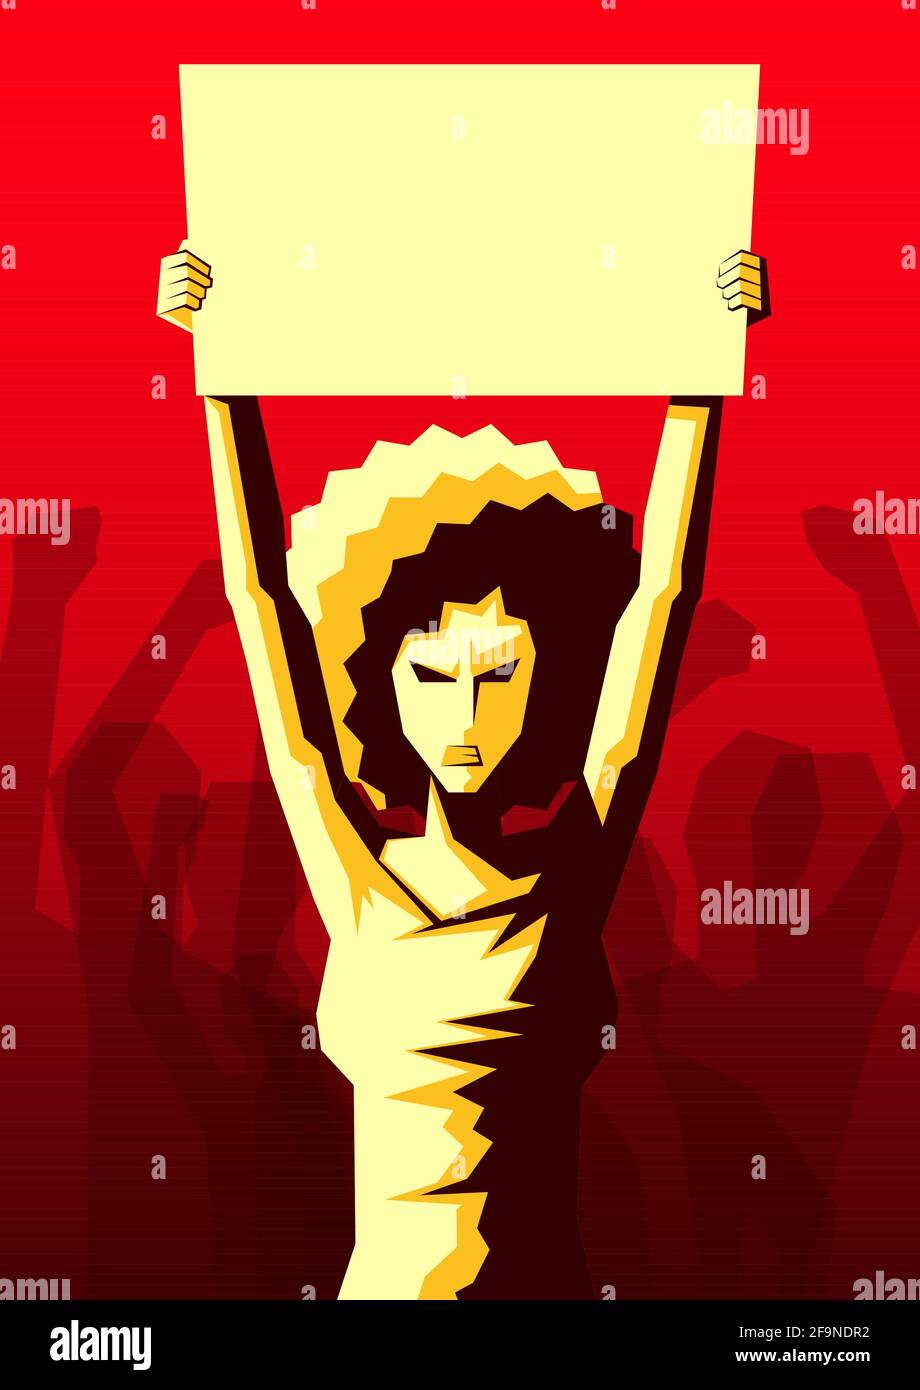 Donna arrabbiata con acconciatura afro sollevata su placard con spazio di copia, e silhouette di folla di mani di persone sollevate nell'aria sullo sfondo Illustrazione Vettoriale